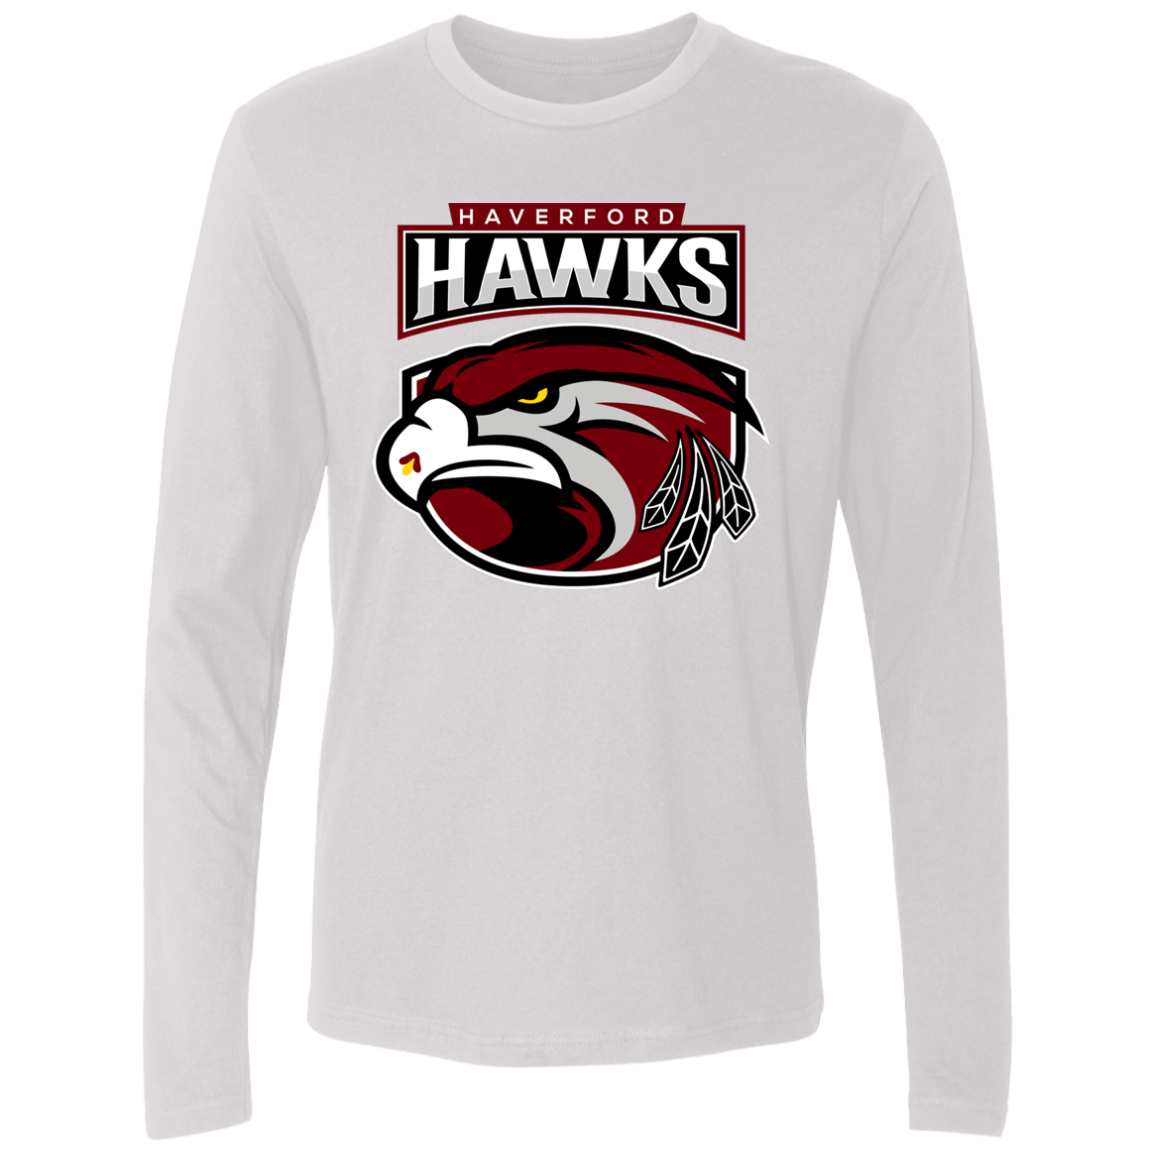 Hawks Men's Premium LS 100% Cotton